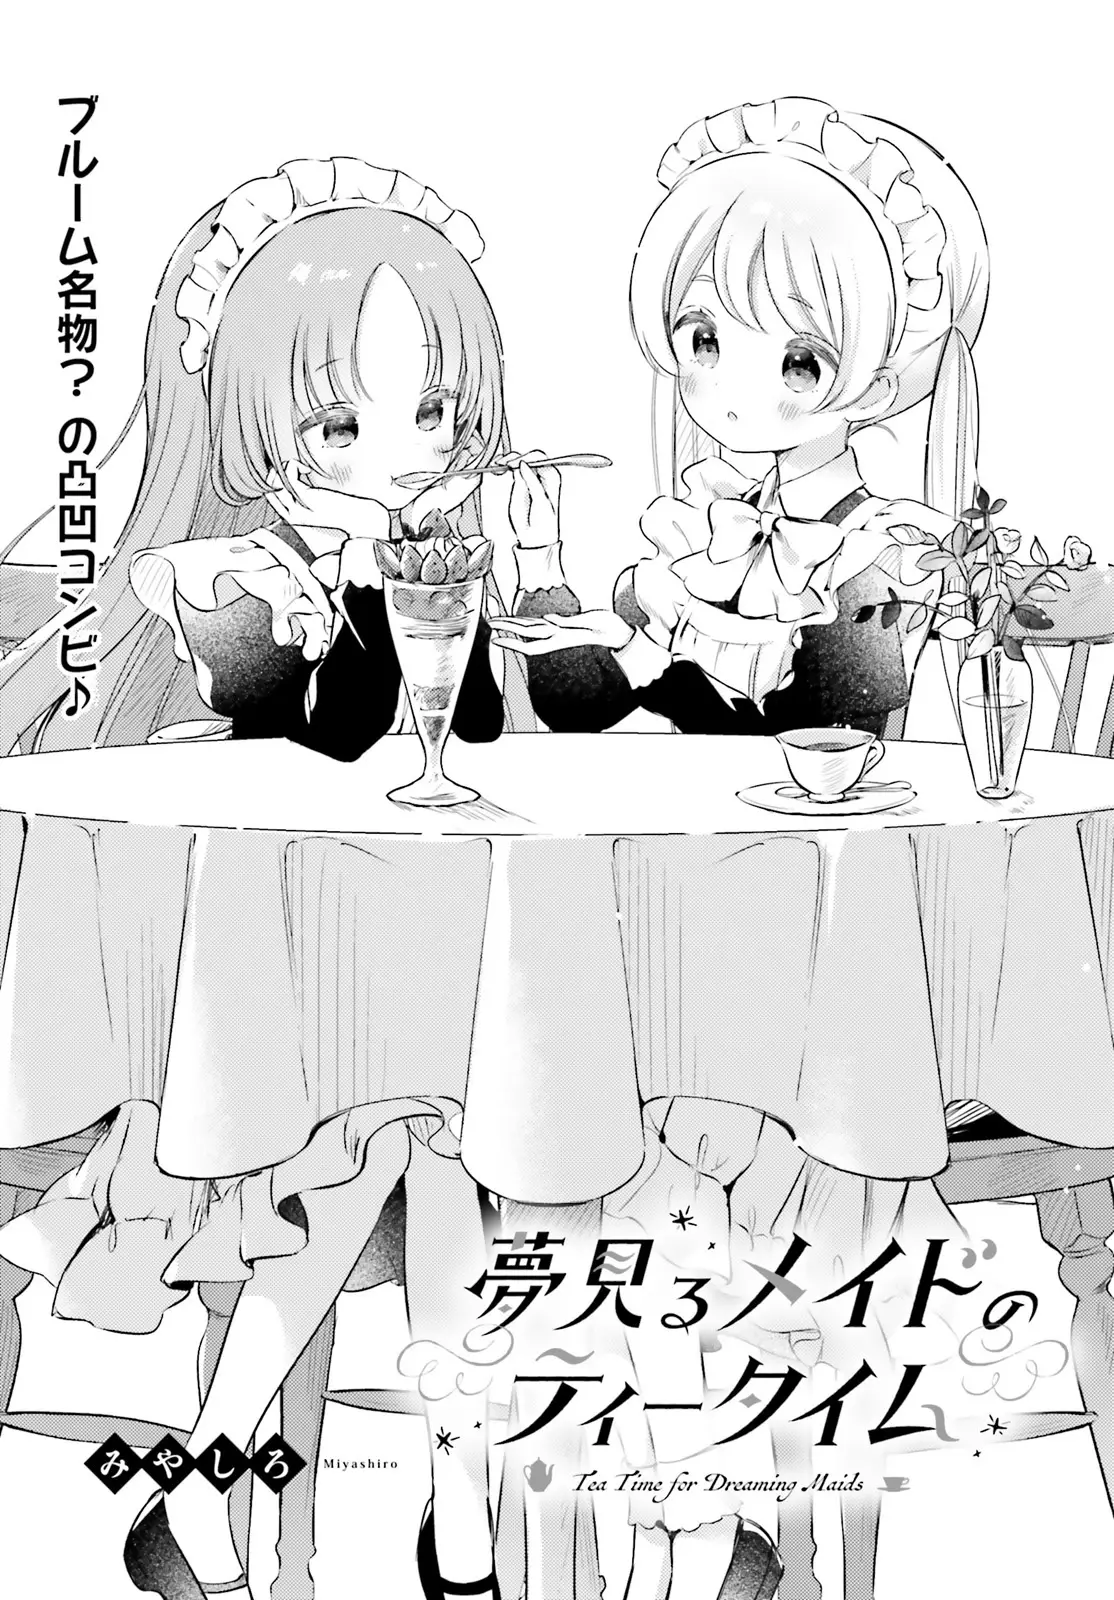 Yumemiru Maid No Tea Time - 5 page 1-00c335bb